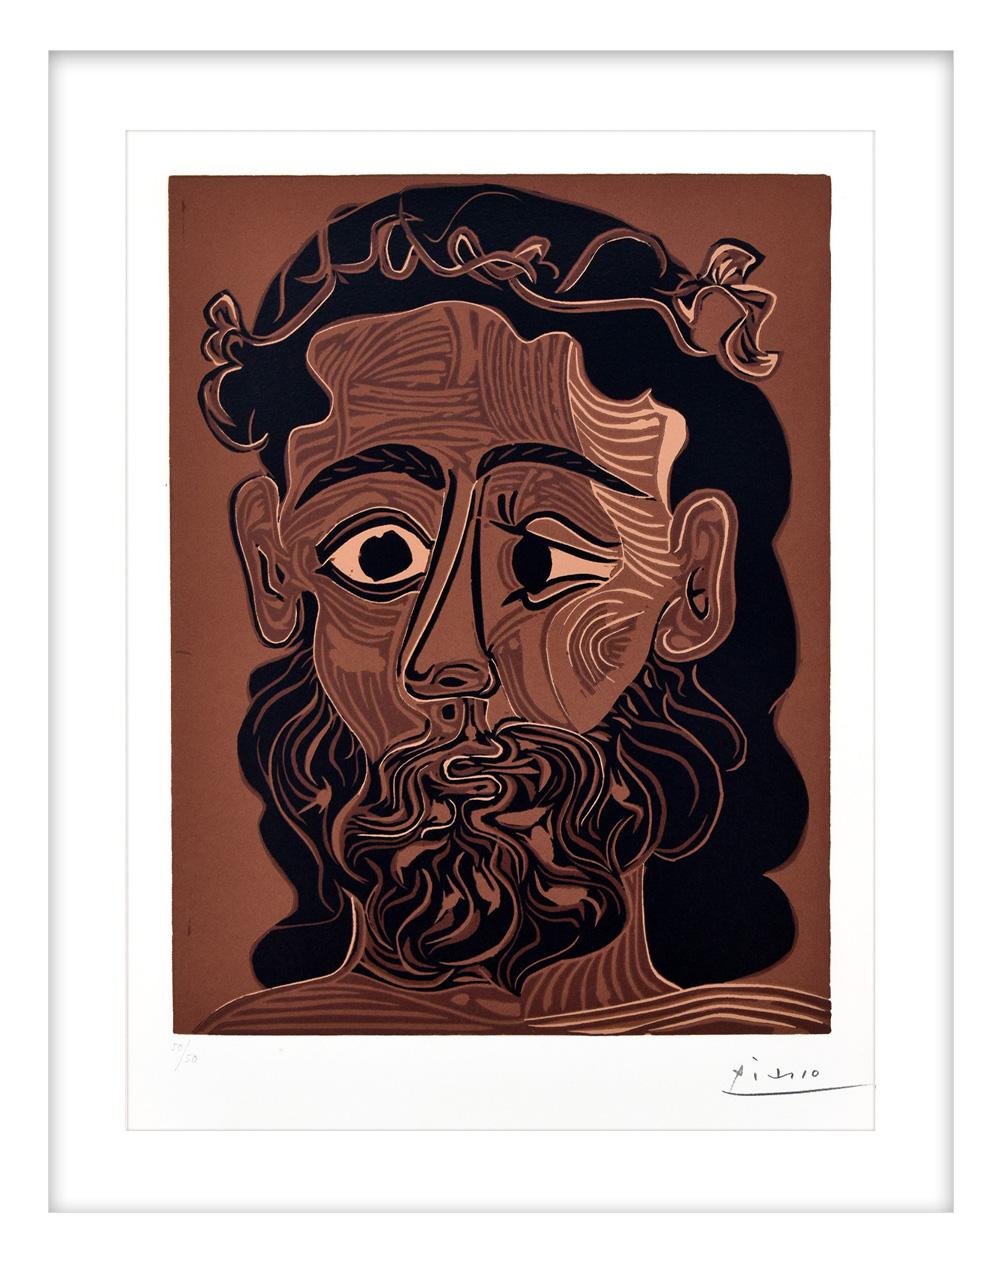 Homme barbu couronné feuilles de vigne - Print by Pablo Picasso